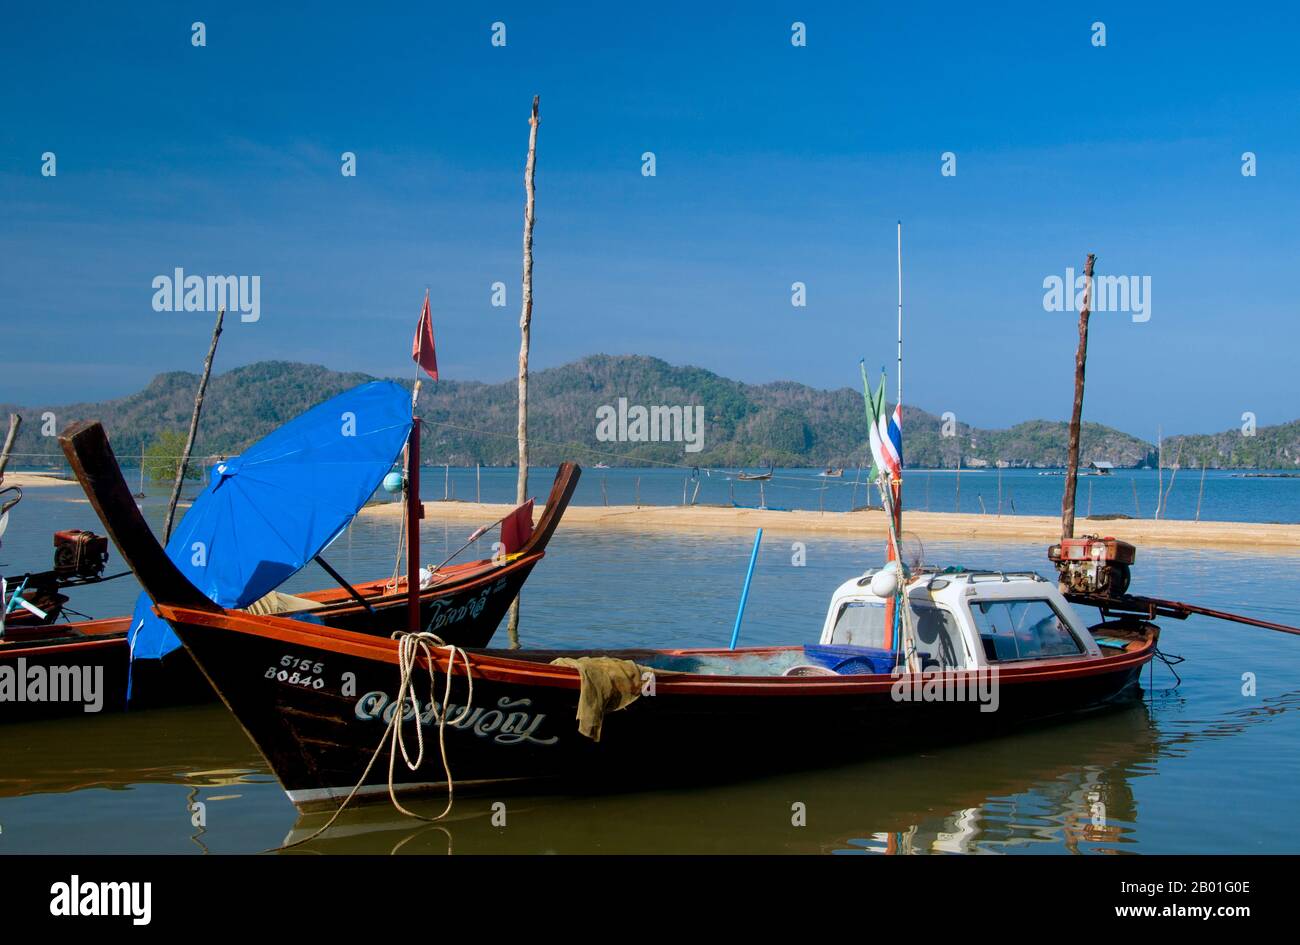 Thaïlande: Bateaux de pêche, Pak Bara. Pak Bara est une petite ville balnéaire et un village de pêcheurs dans le sud de la Thaïlande à environ 60km (37 miles) au nord-ouest de la capitale provinciale de Satun. Il sert de point de départ pour visiter le parc national marin de Mu Ko Phetra et le parc national marin de Ko Tarutao. Banque D'Images